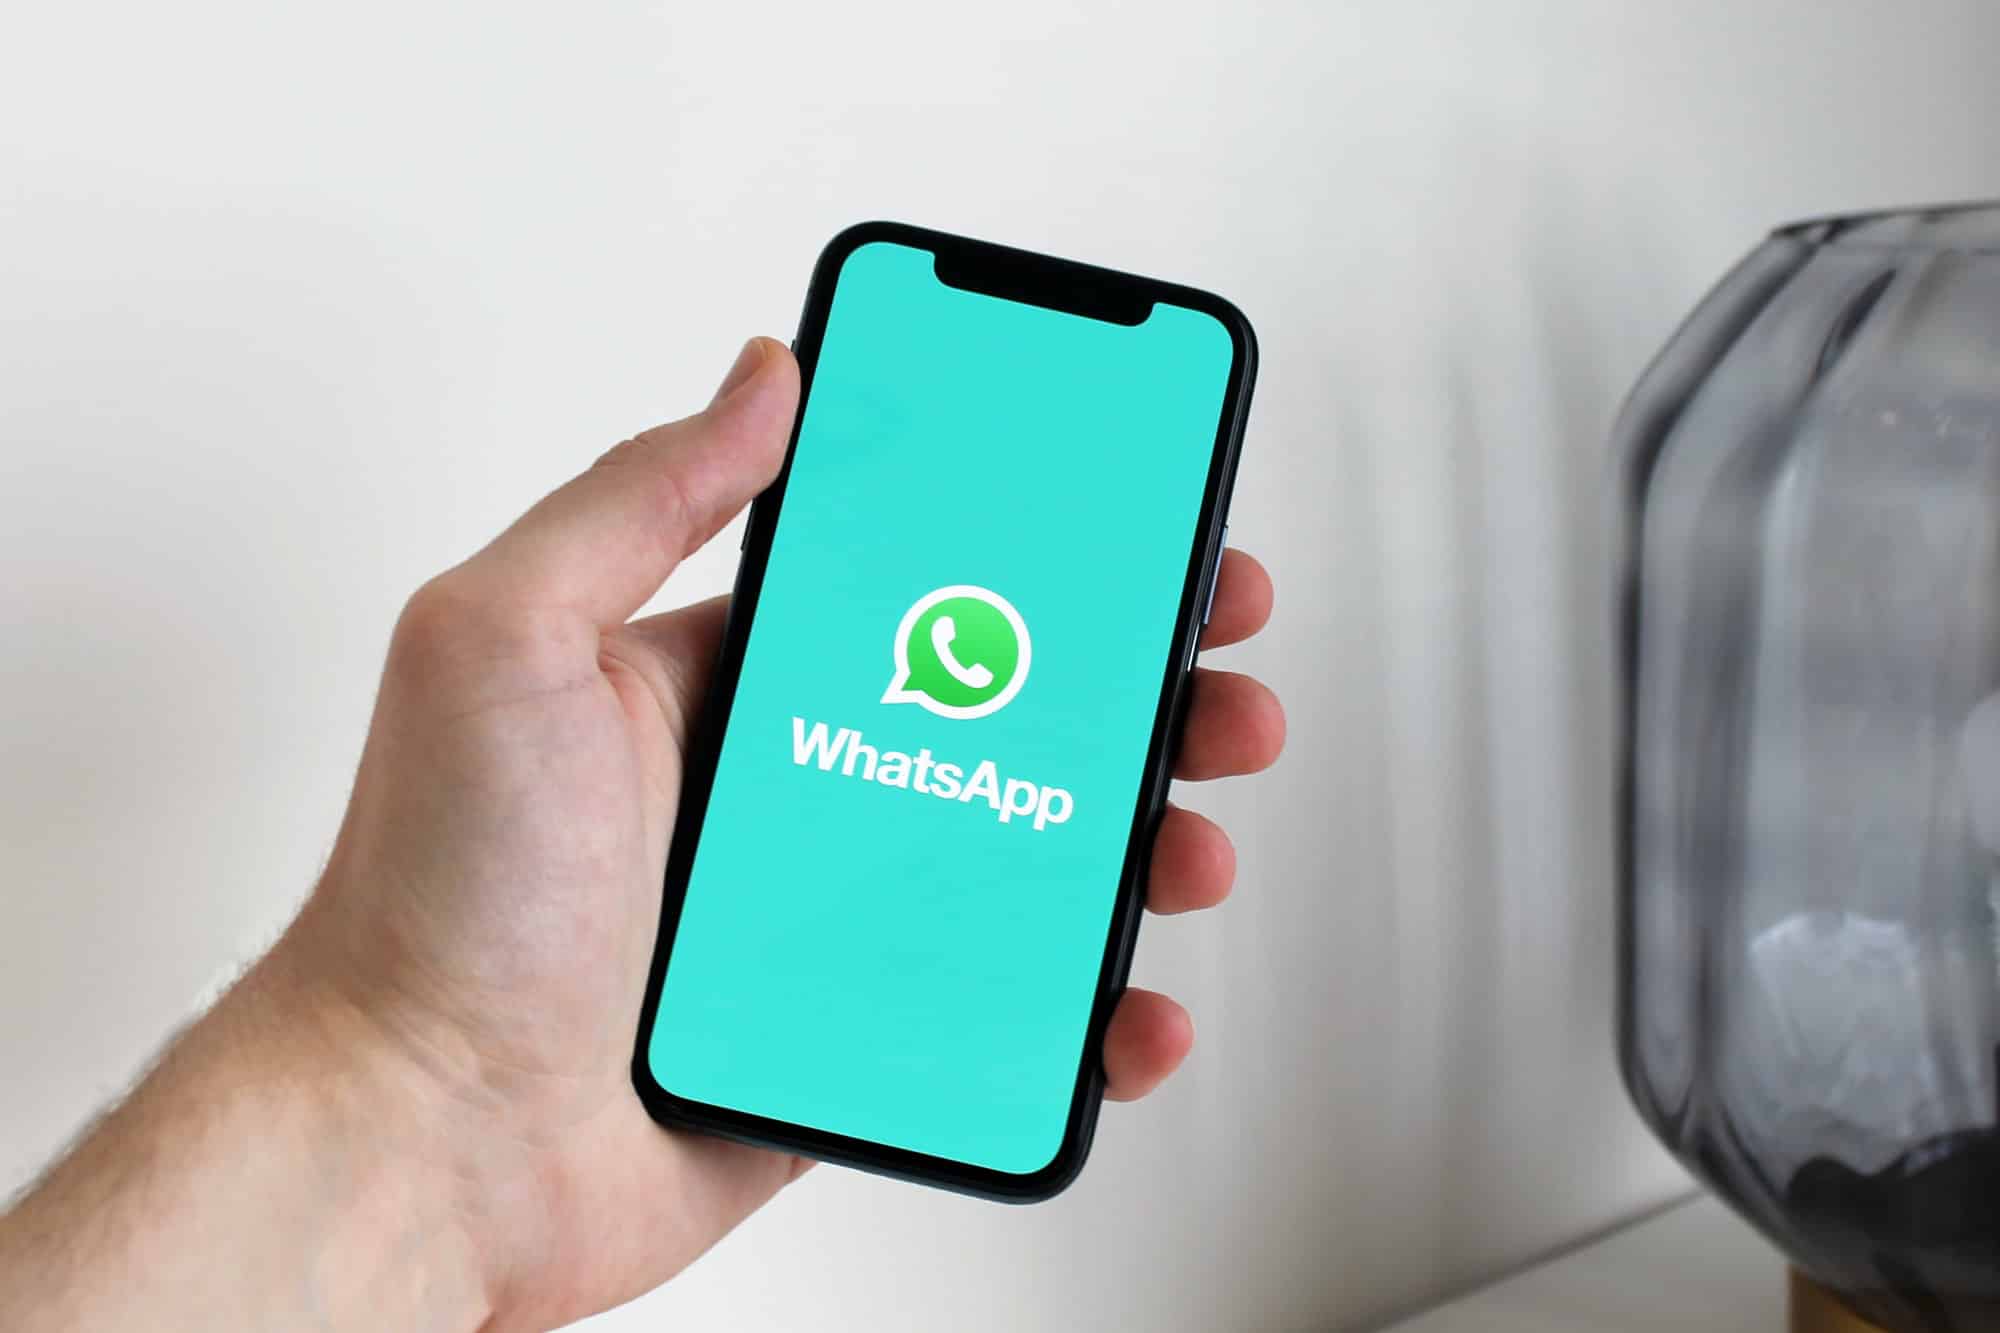 Eine Person hält ein iPhone in der Hand, auf dem ein grüner Bildschirm mit dem WhatsApp-Logo zu sehen ist